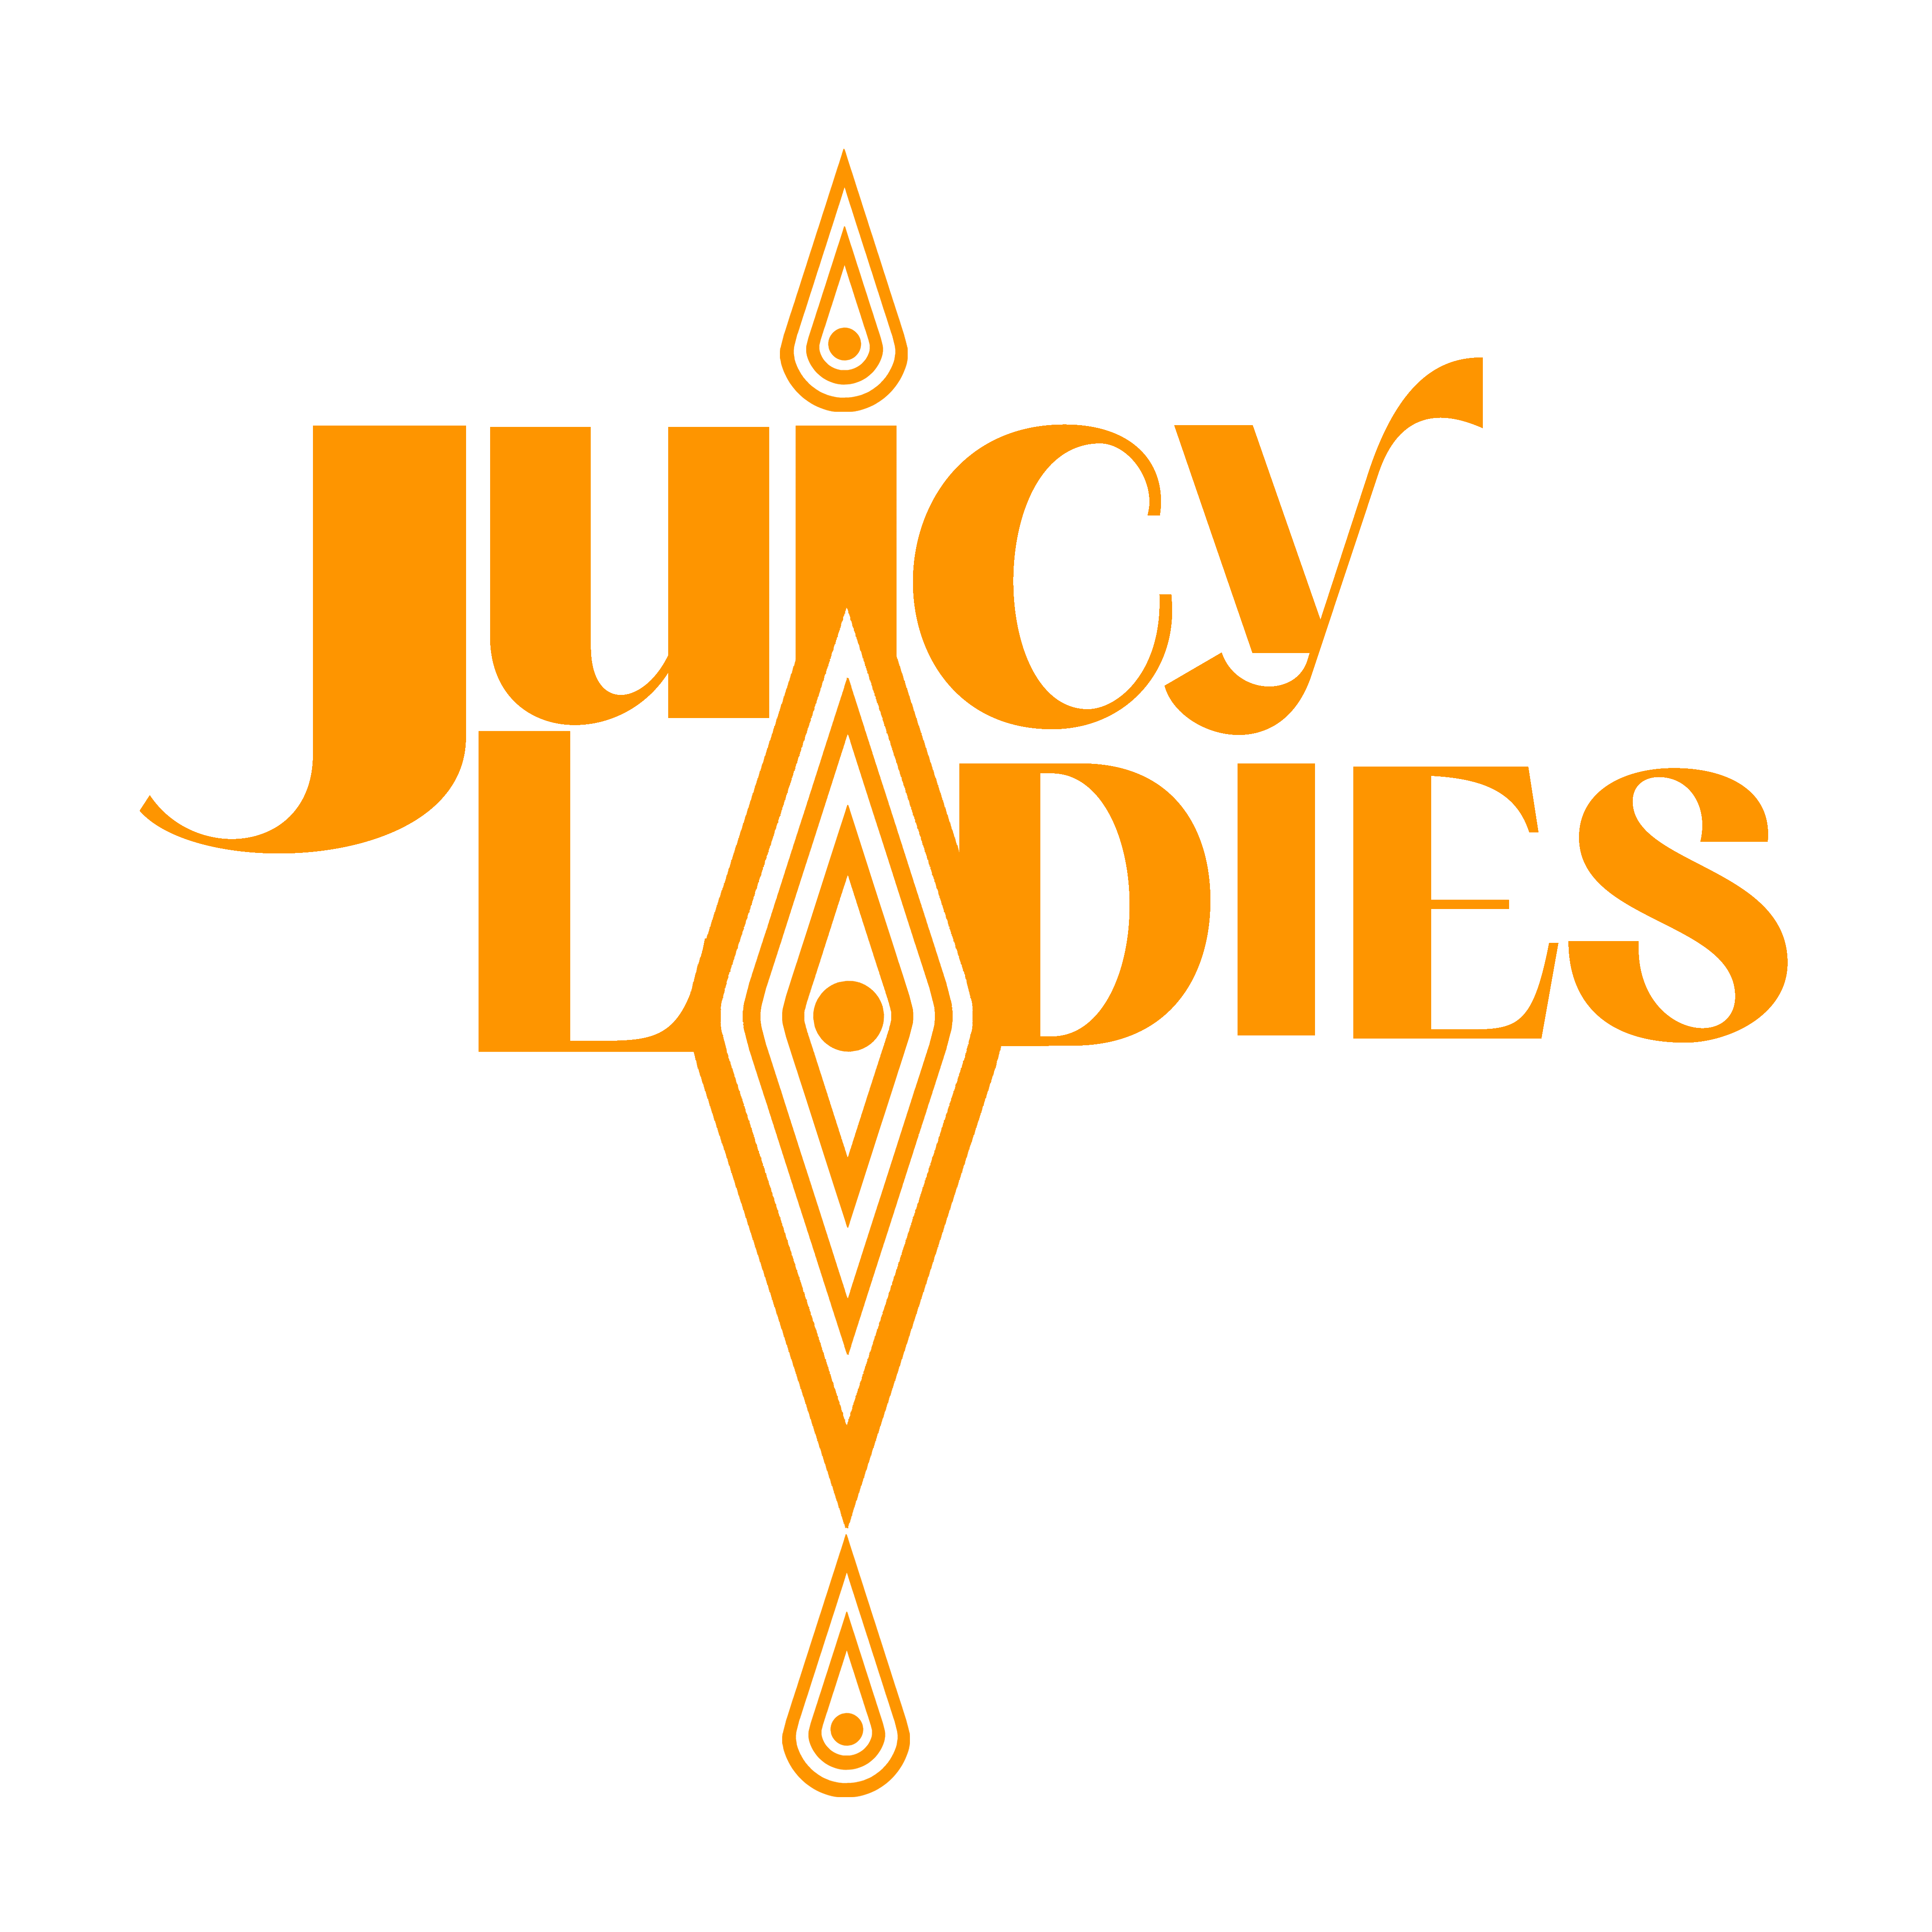 The Juicy Ladies orange logo